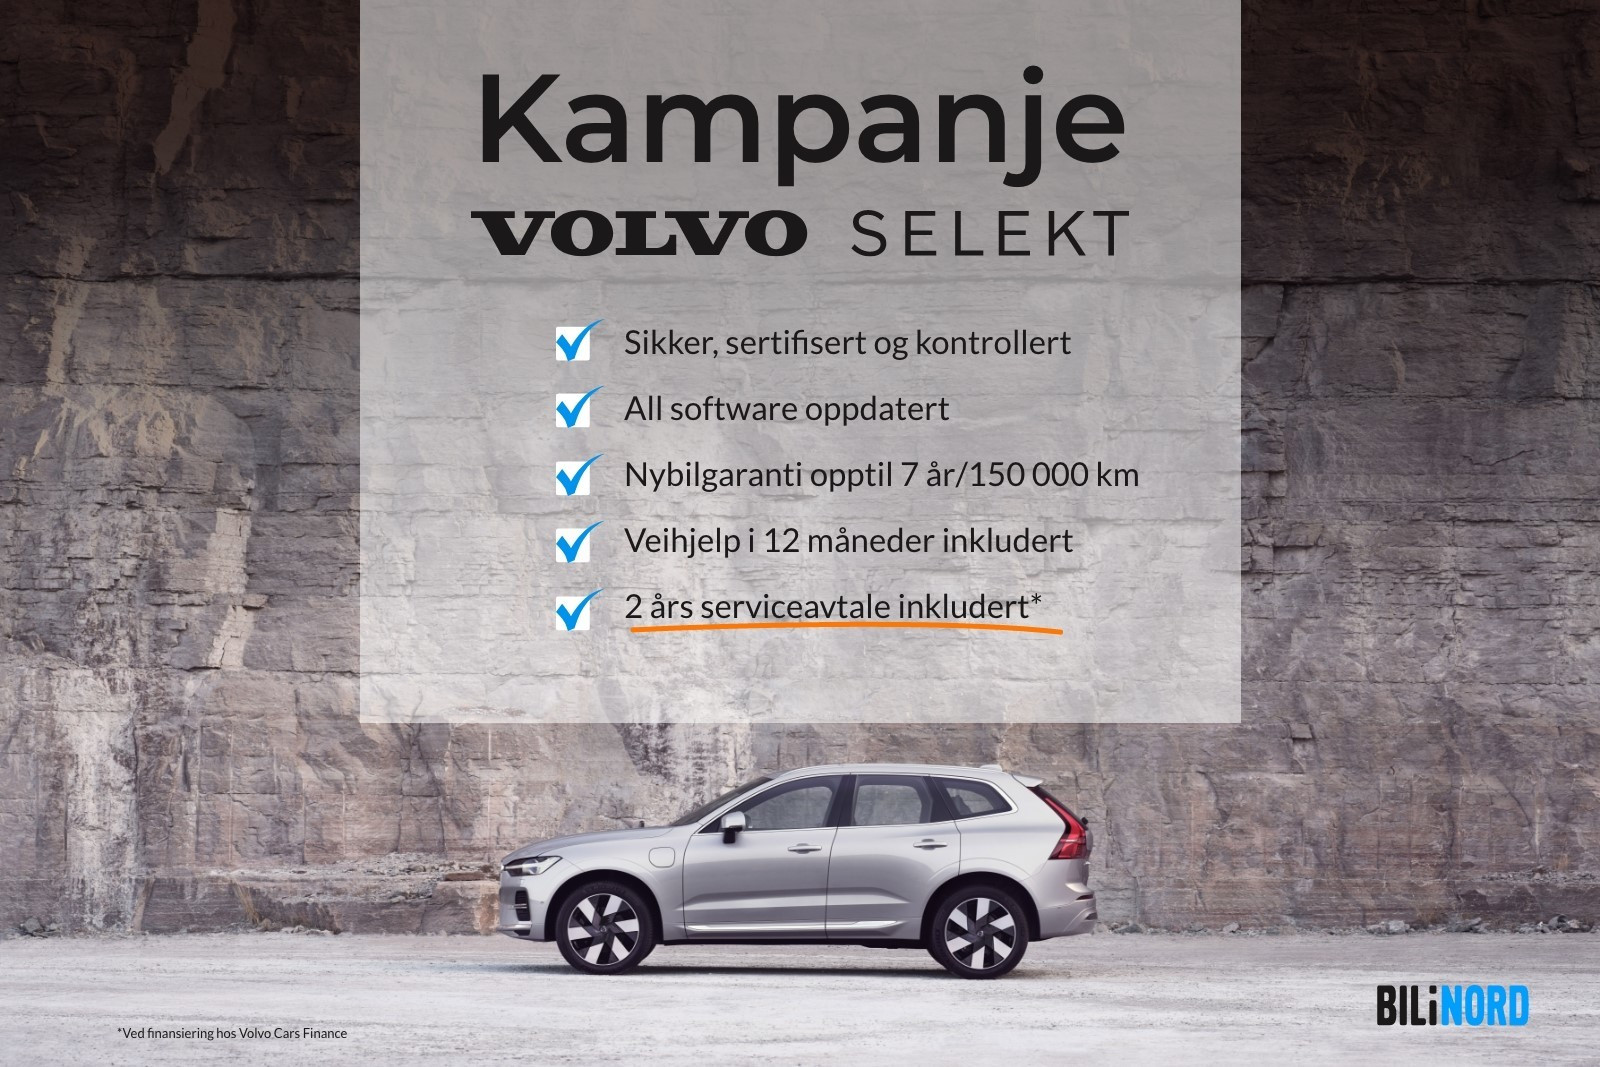 Kampanje - Volvo Selekt Kampanje!